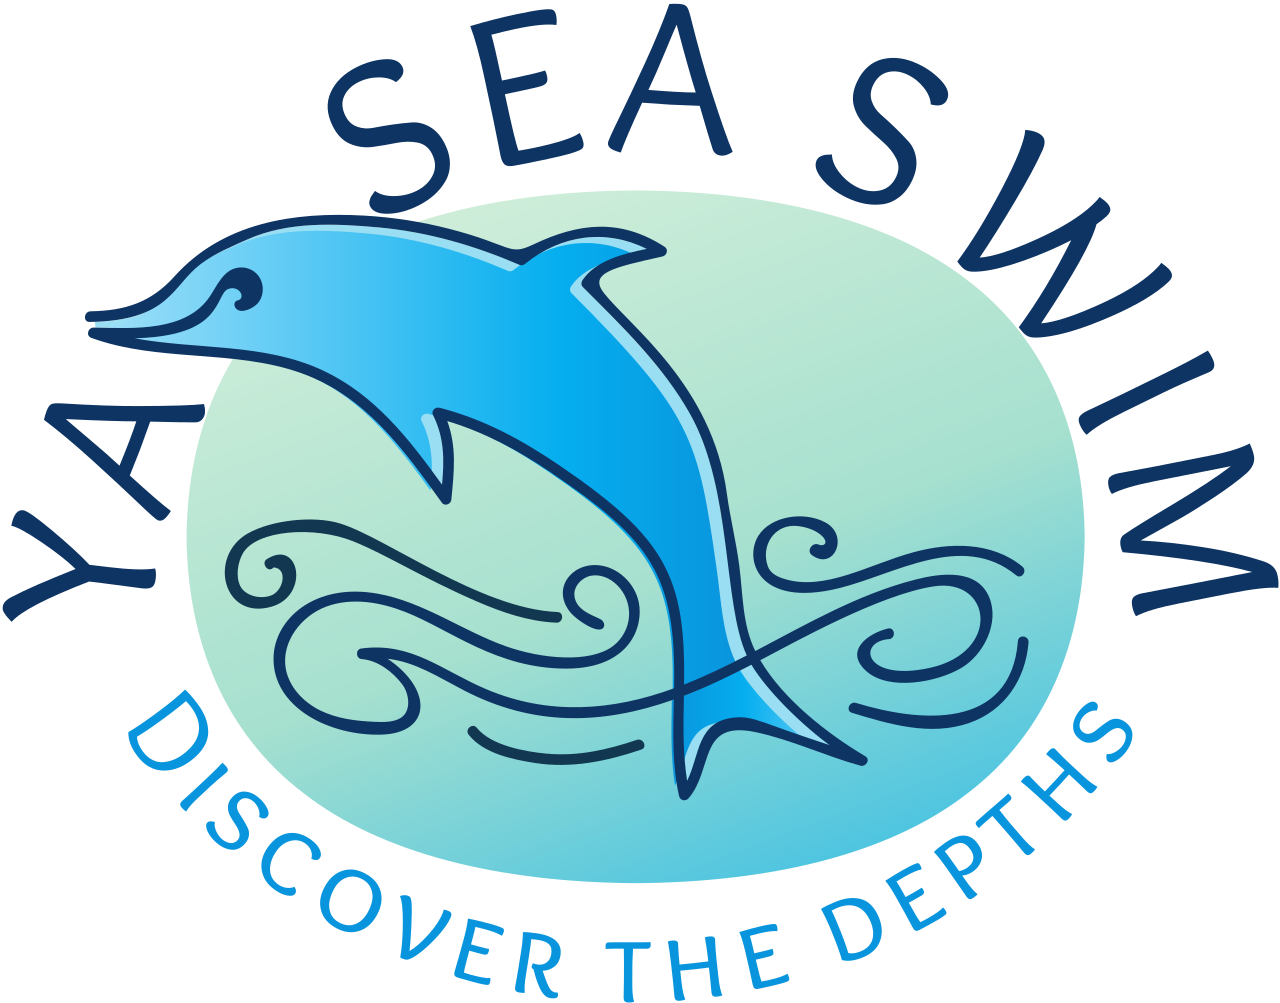 YA SEA SWIM's logo